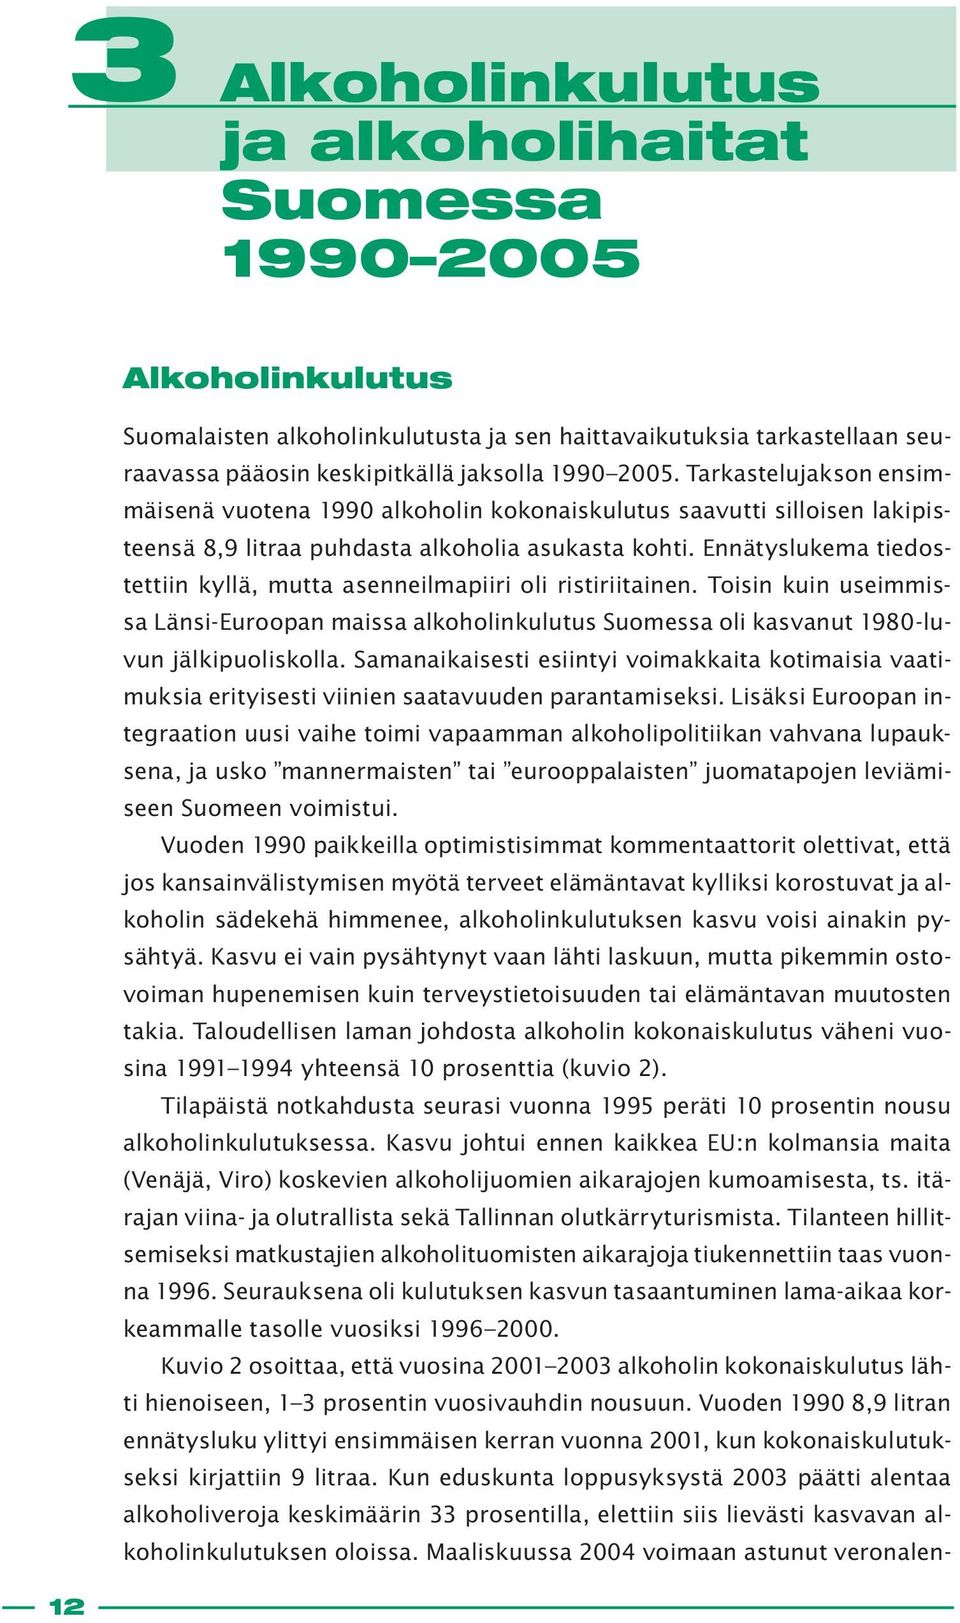 Ennätyslukema tiedostettiin kyllä, mutta asenneilmapiiri oli ristiriitainen. Toisin kuin useimmissa Länsi-Euroopan maissa alkoholinkulutus Suomessa oli kasvanut 1980-luvun jälkipuoliskolla.